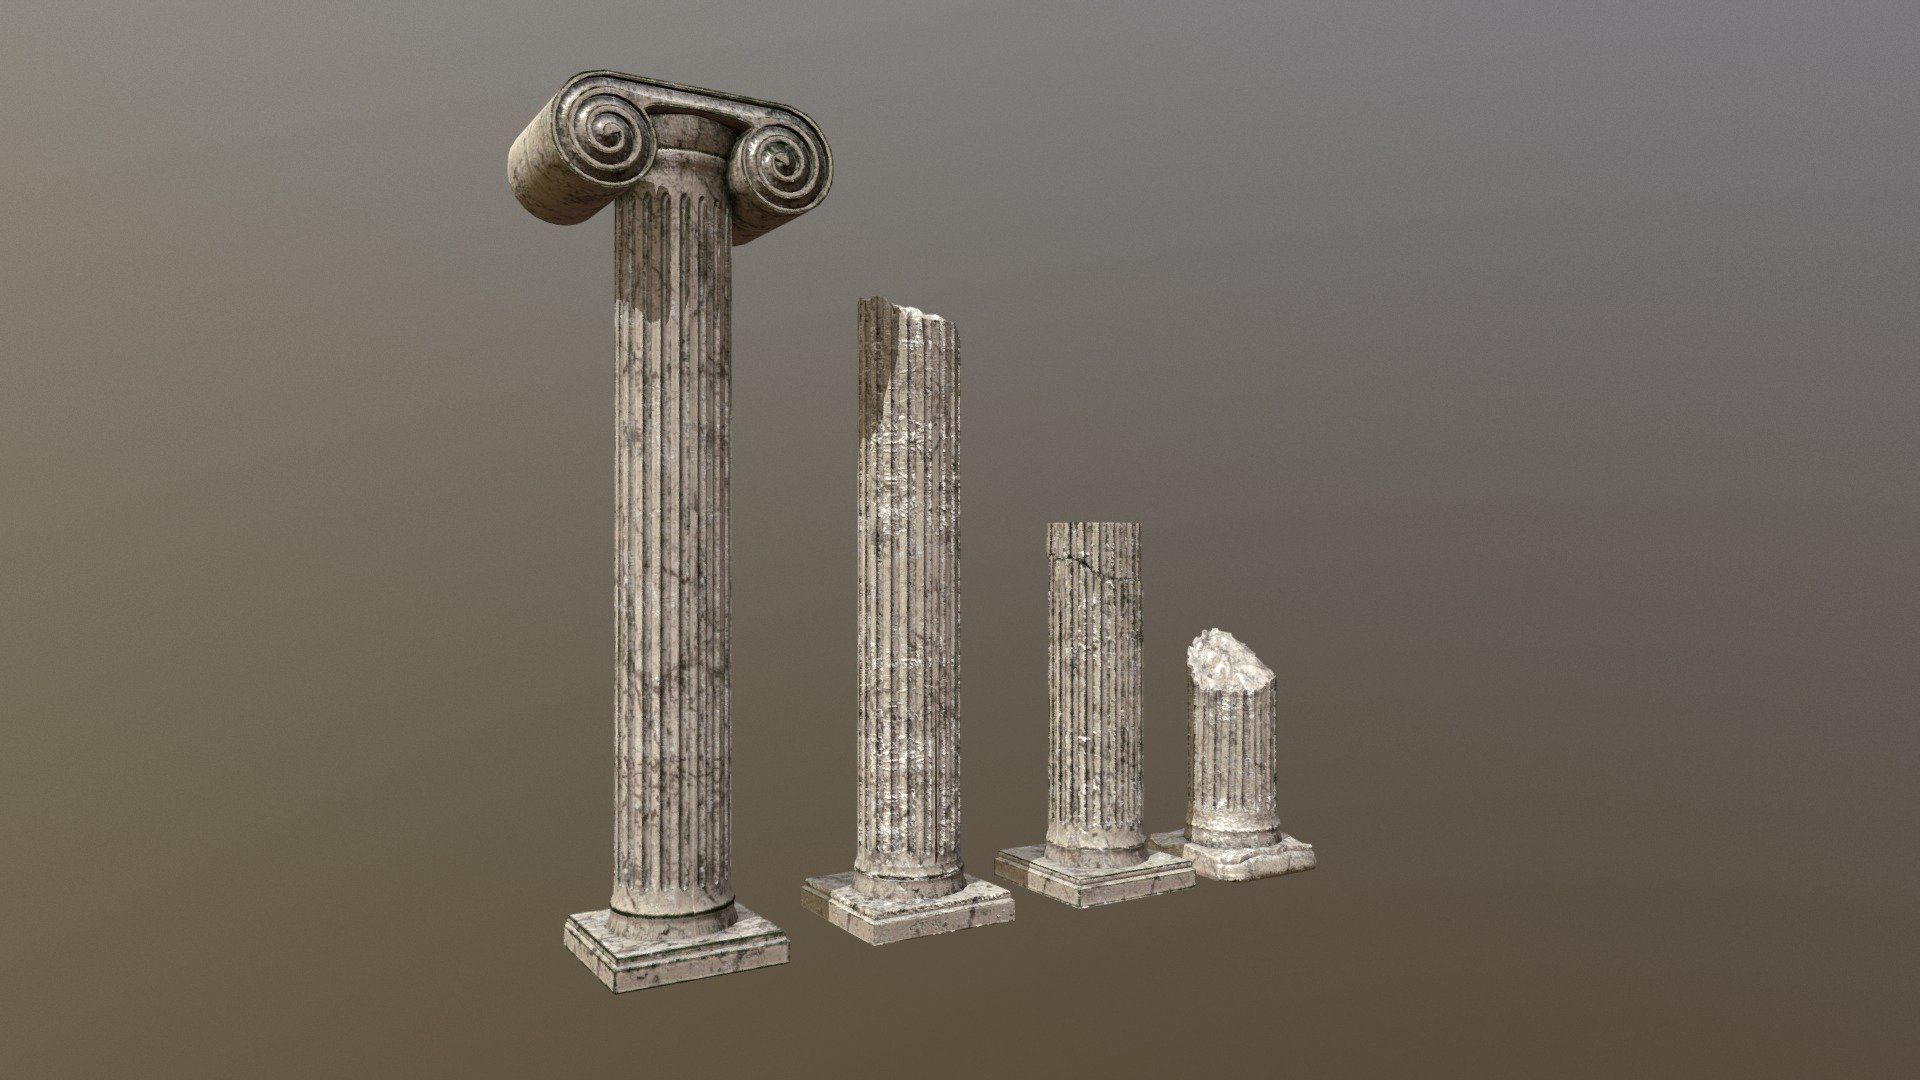 Roman columns / Pillars